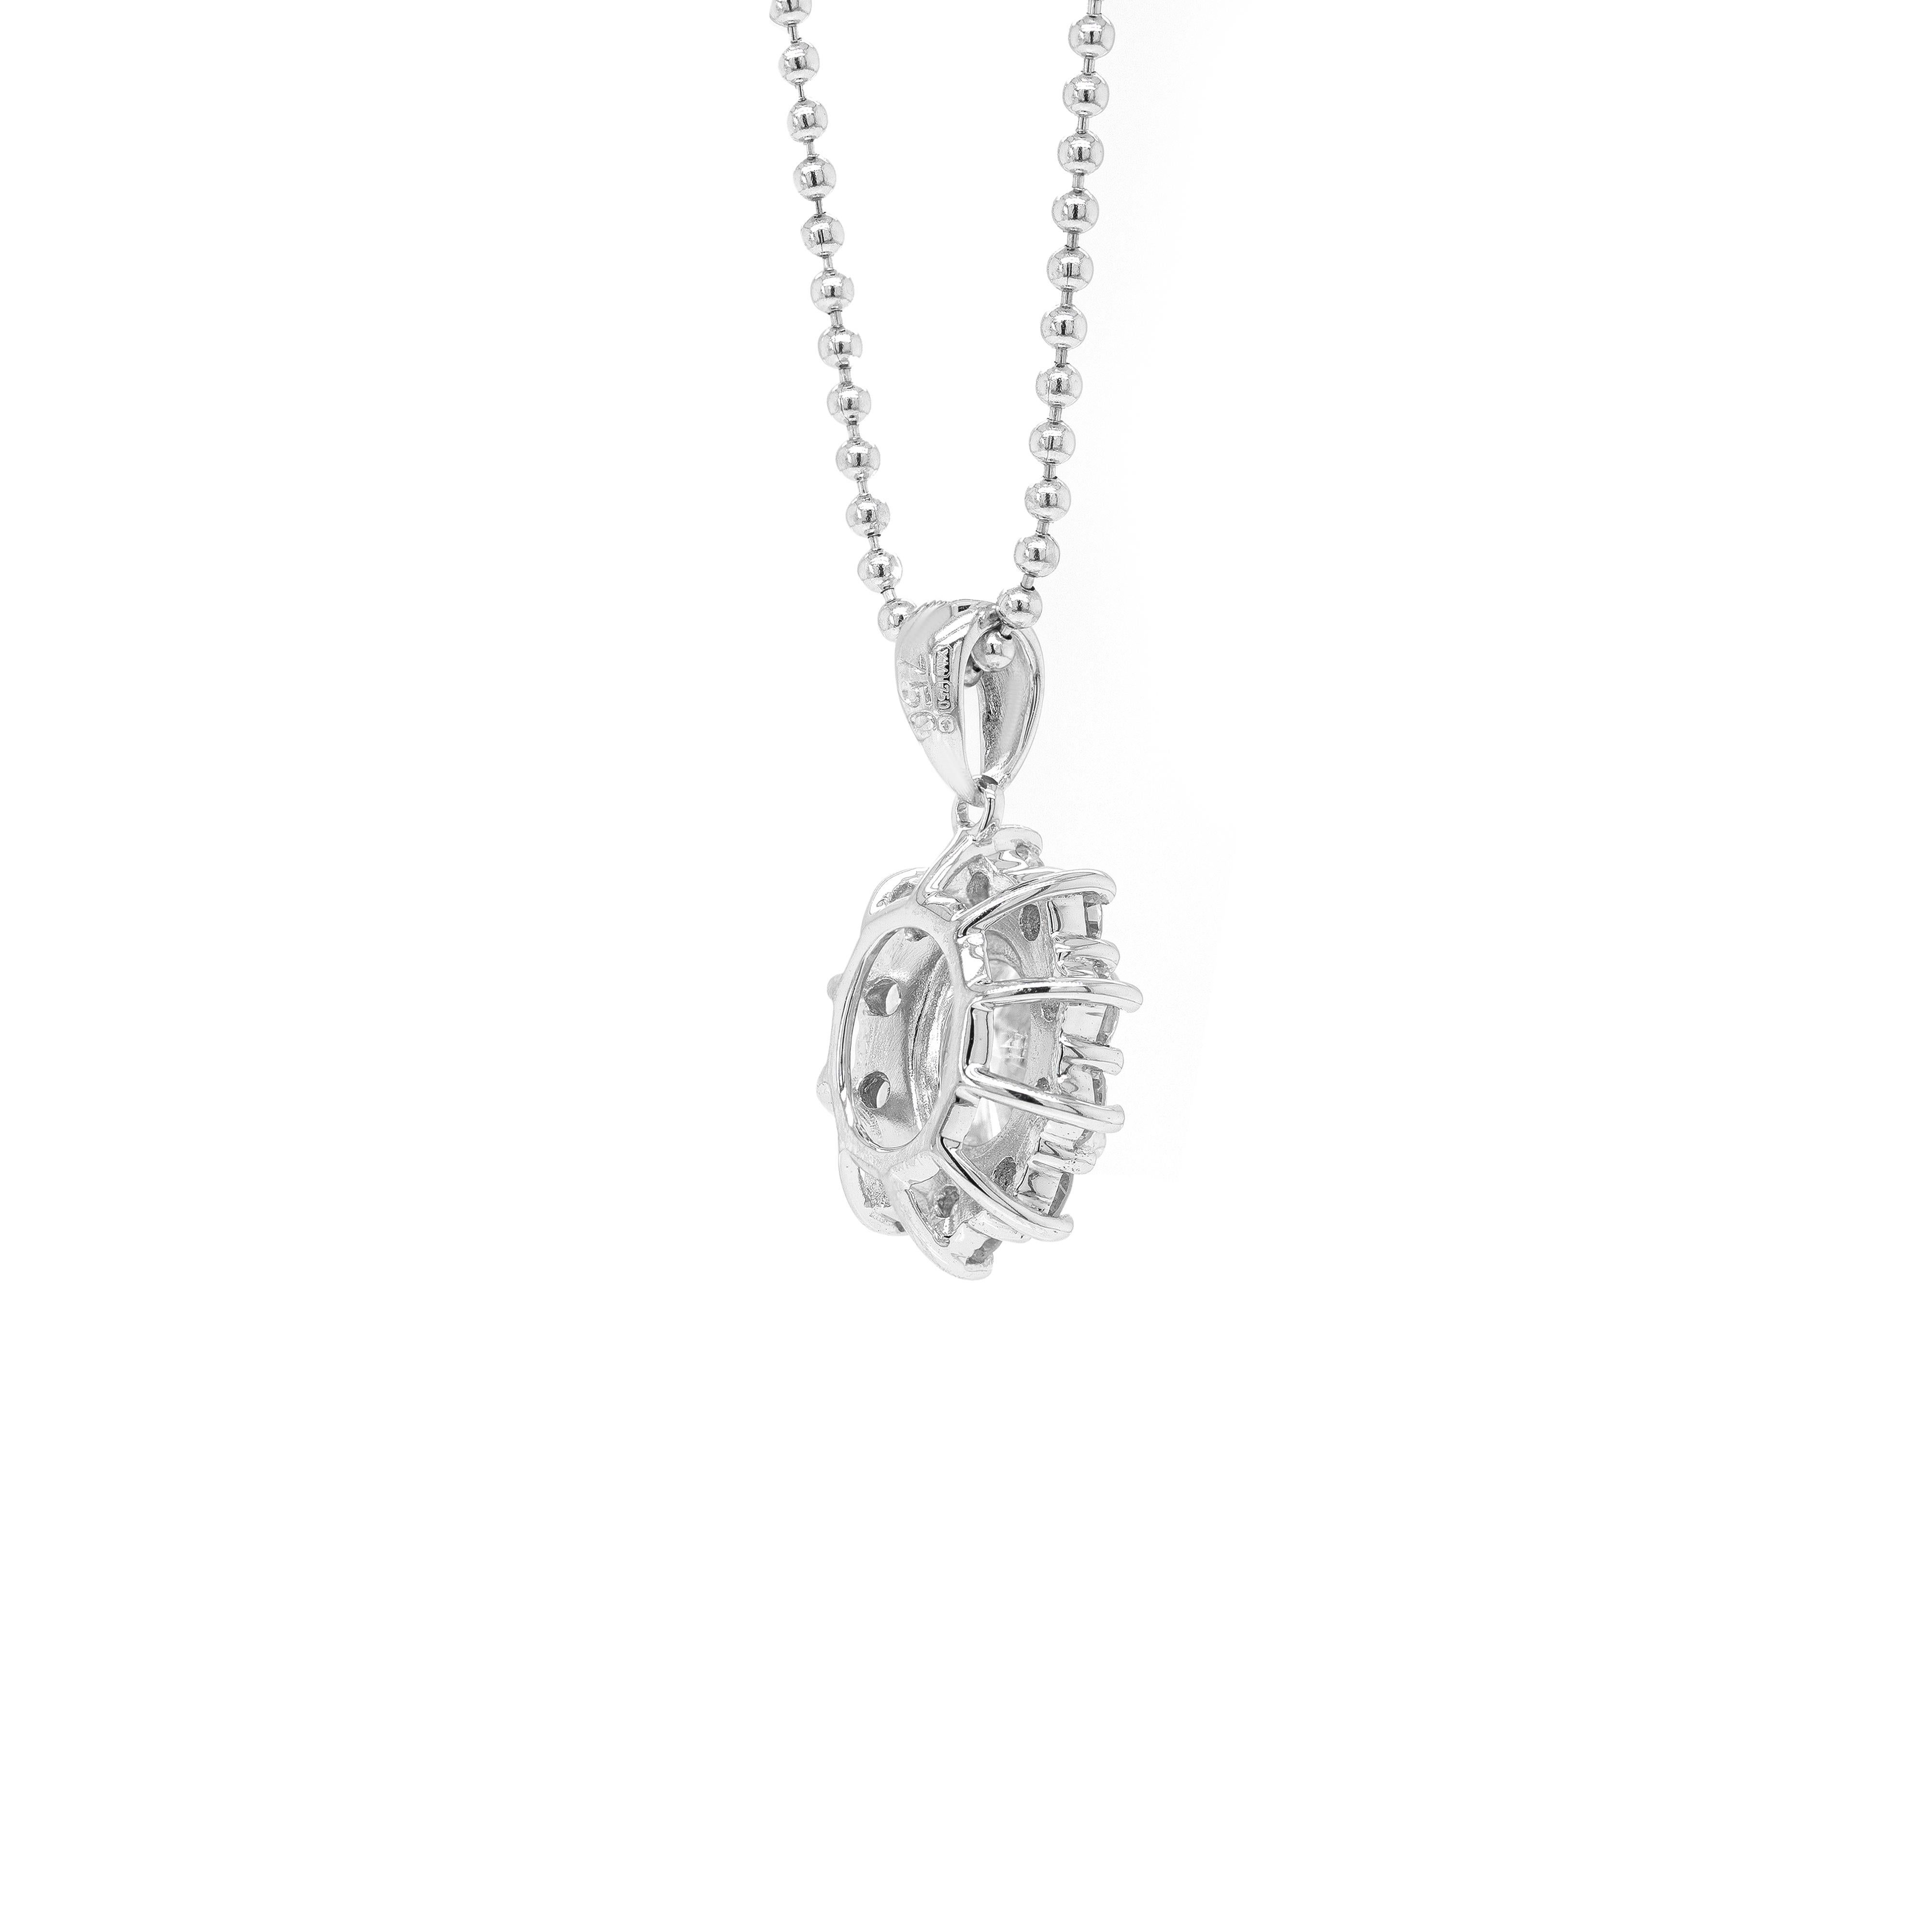 Ce ravissant pendentif est magnifiquement serti d'un diamant de taille ovale pesant 0,62 ct, dans une monture ouverte à quatre griffes. Le diamant central exquis est entouré de 10 diamants ronds de qualité, taille brillant, pesant au total 0,50 ct,